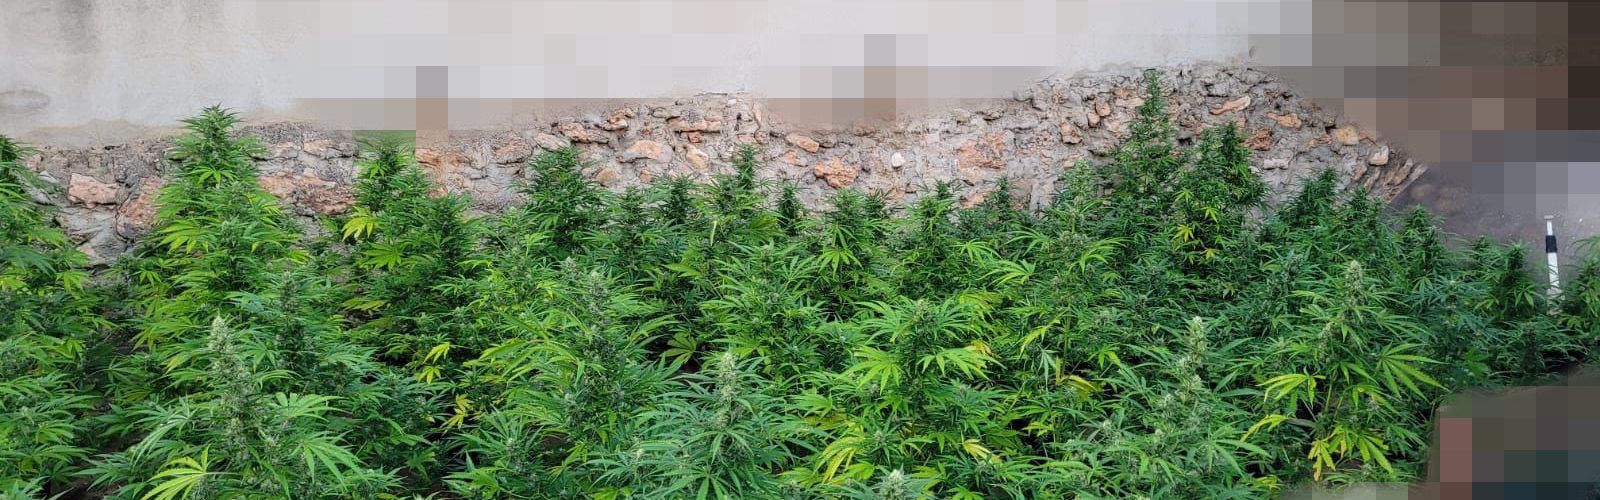 La Policia Local de Vinaròs intercepta una plantació de marihuana